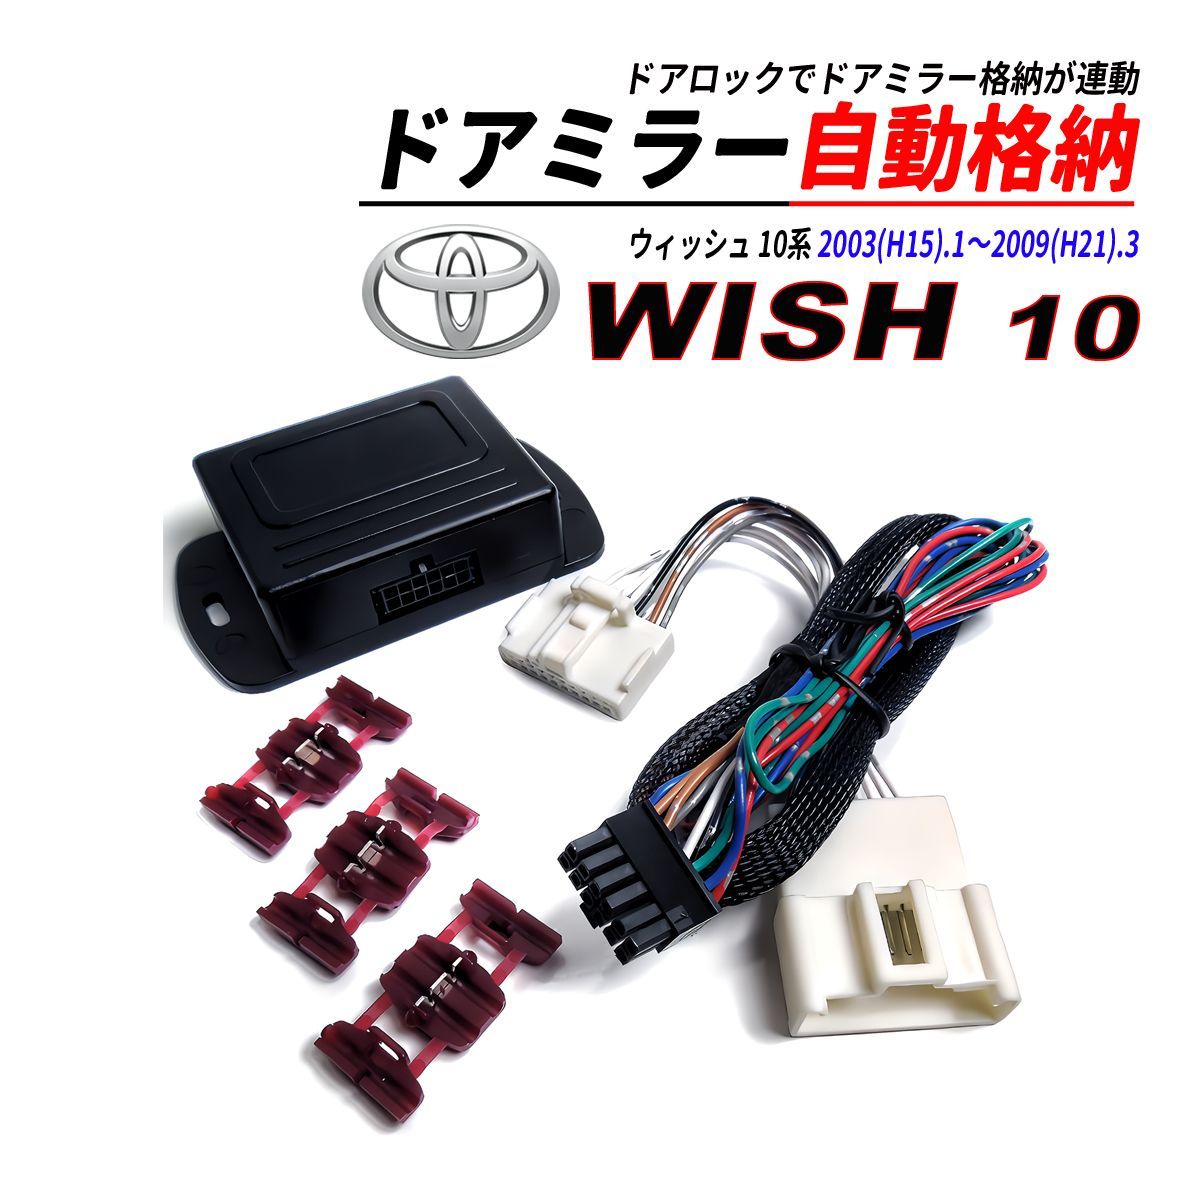 ウィッシュ 10系 ドアミラー 自動格納 キット Aタイプ キーレスエントリー対応 - メルカリ